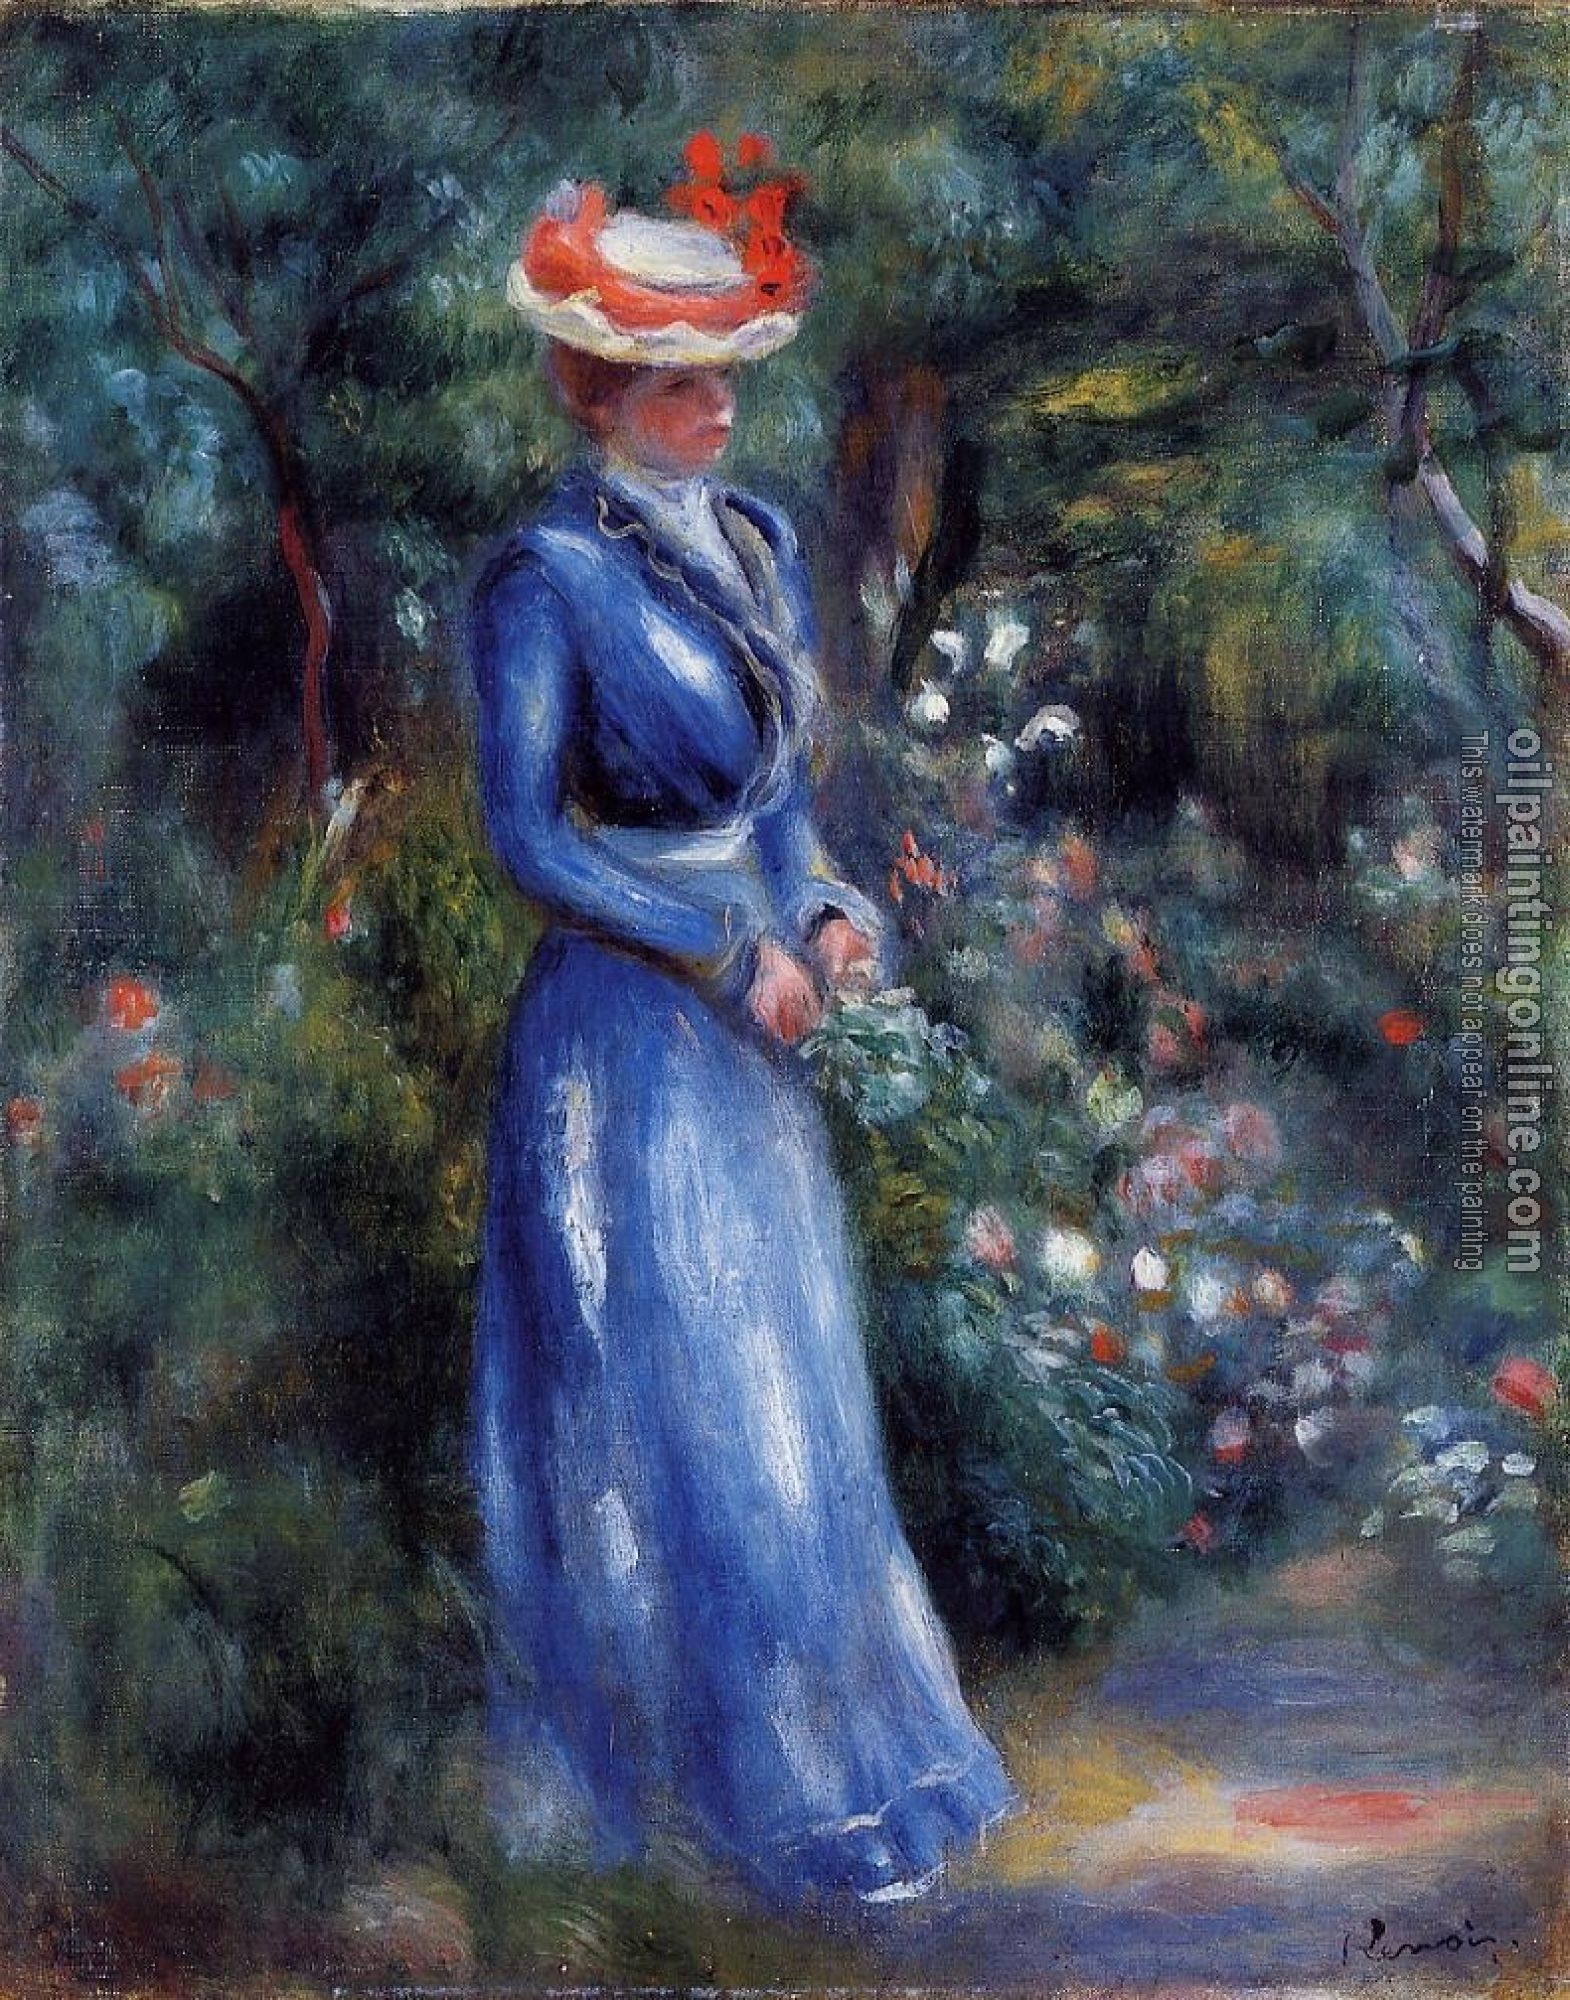 Renoir, Pierre Auguste - Woman in a Blue Dress, Garden of Saint-Cloud